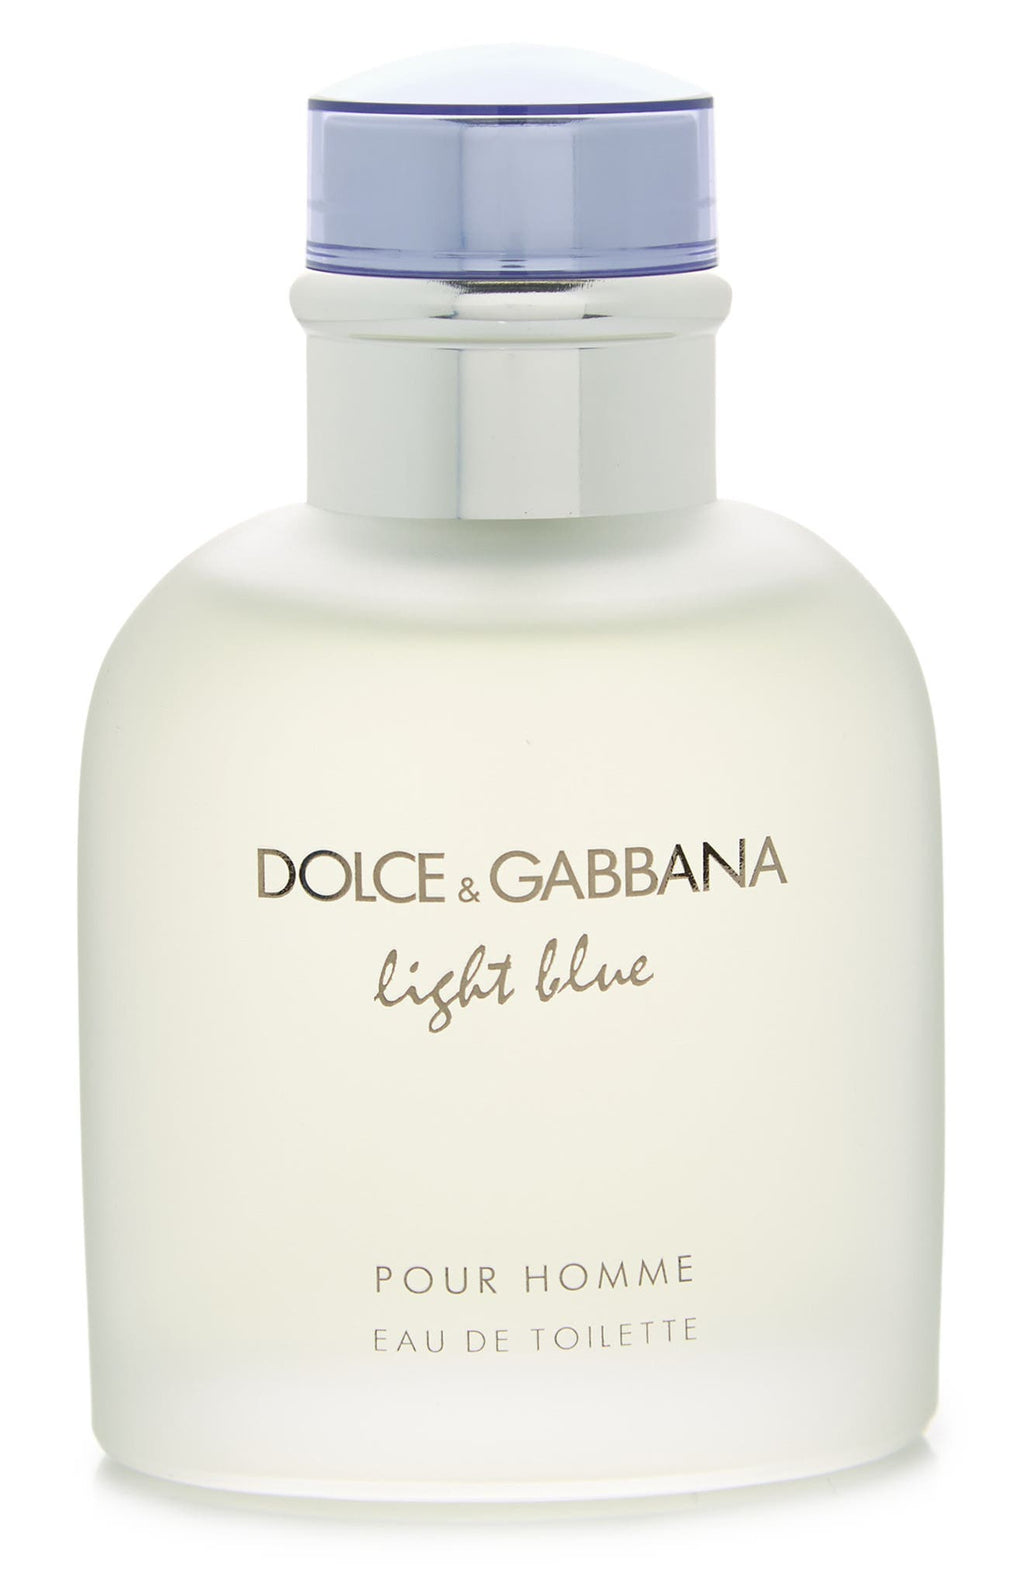 DOLCE&GABBANA Men's Light Blue Eau de Toilette - 2.5 fl. oz., Main, color, NONE